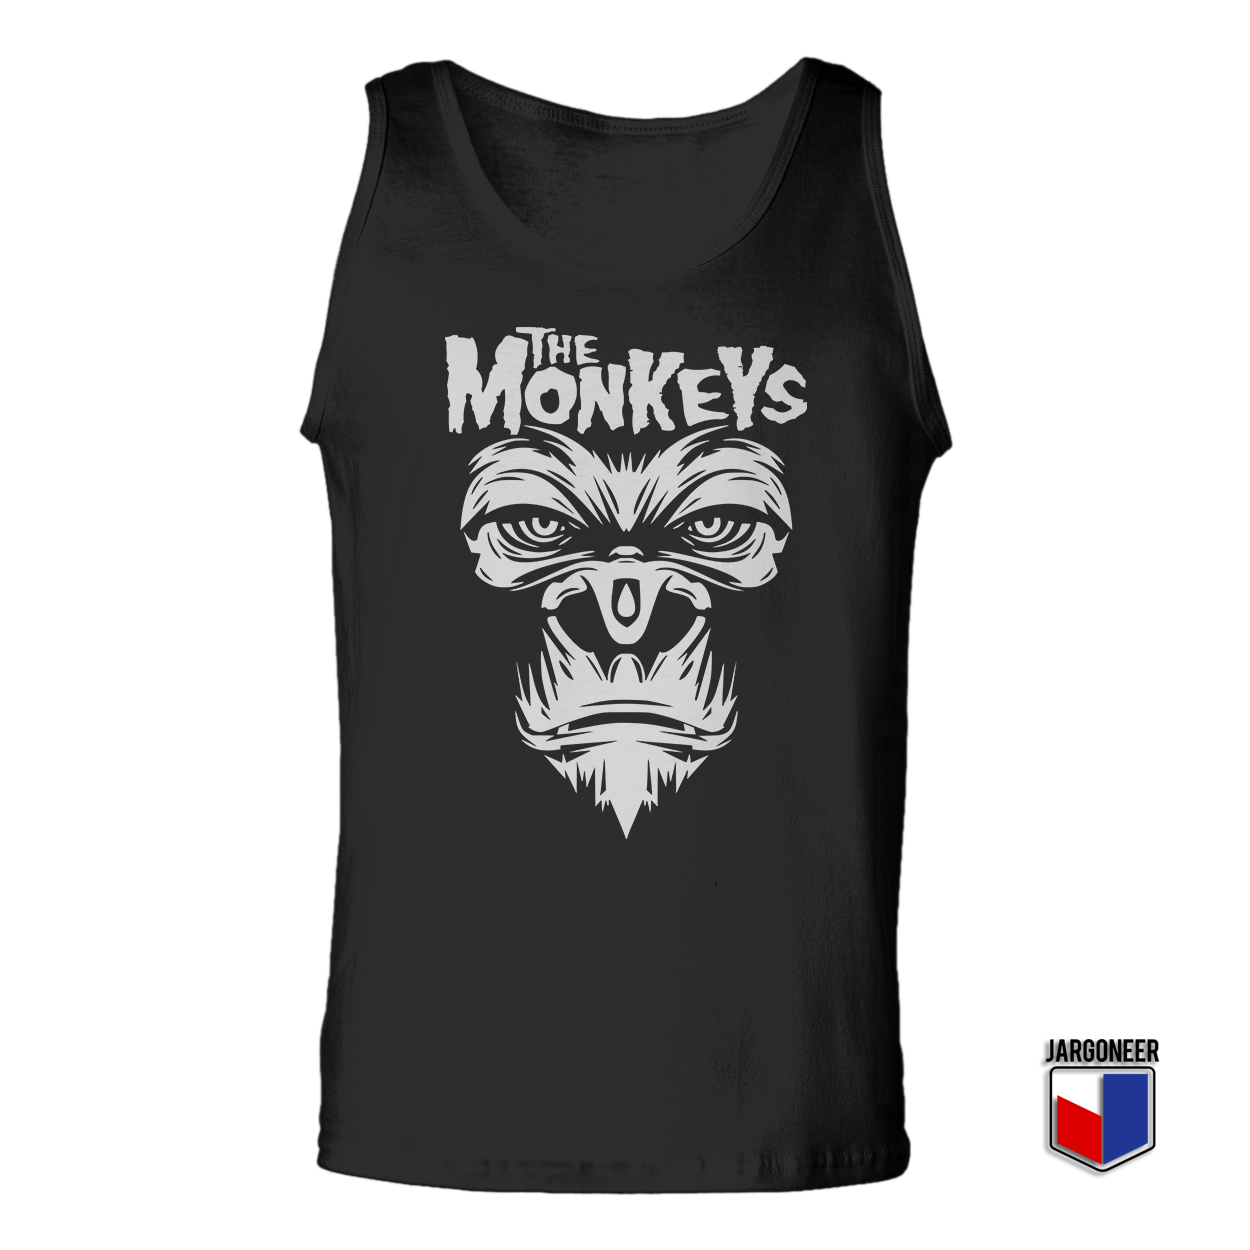 The Monkeys Black Tank Top - Shop Unique Graphic Cool Shirt Designs